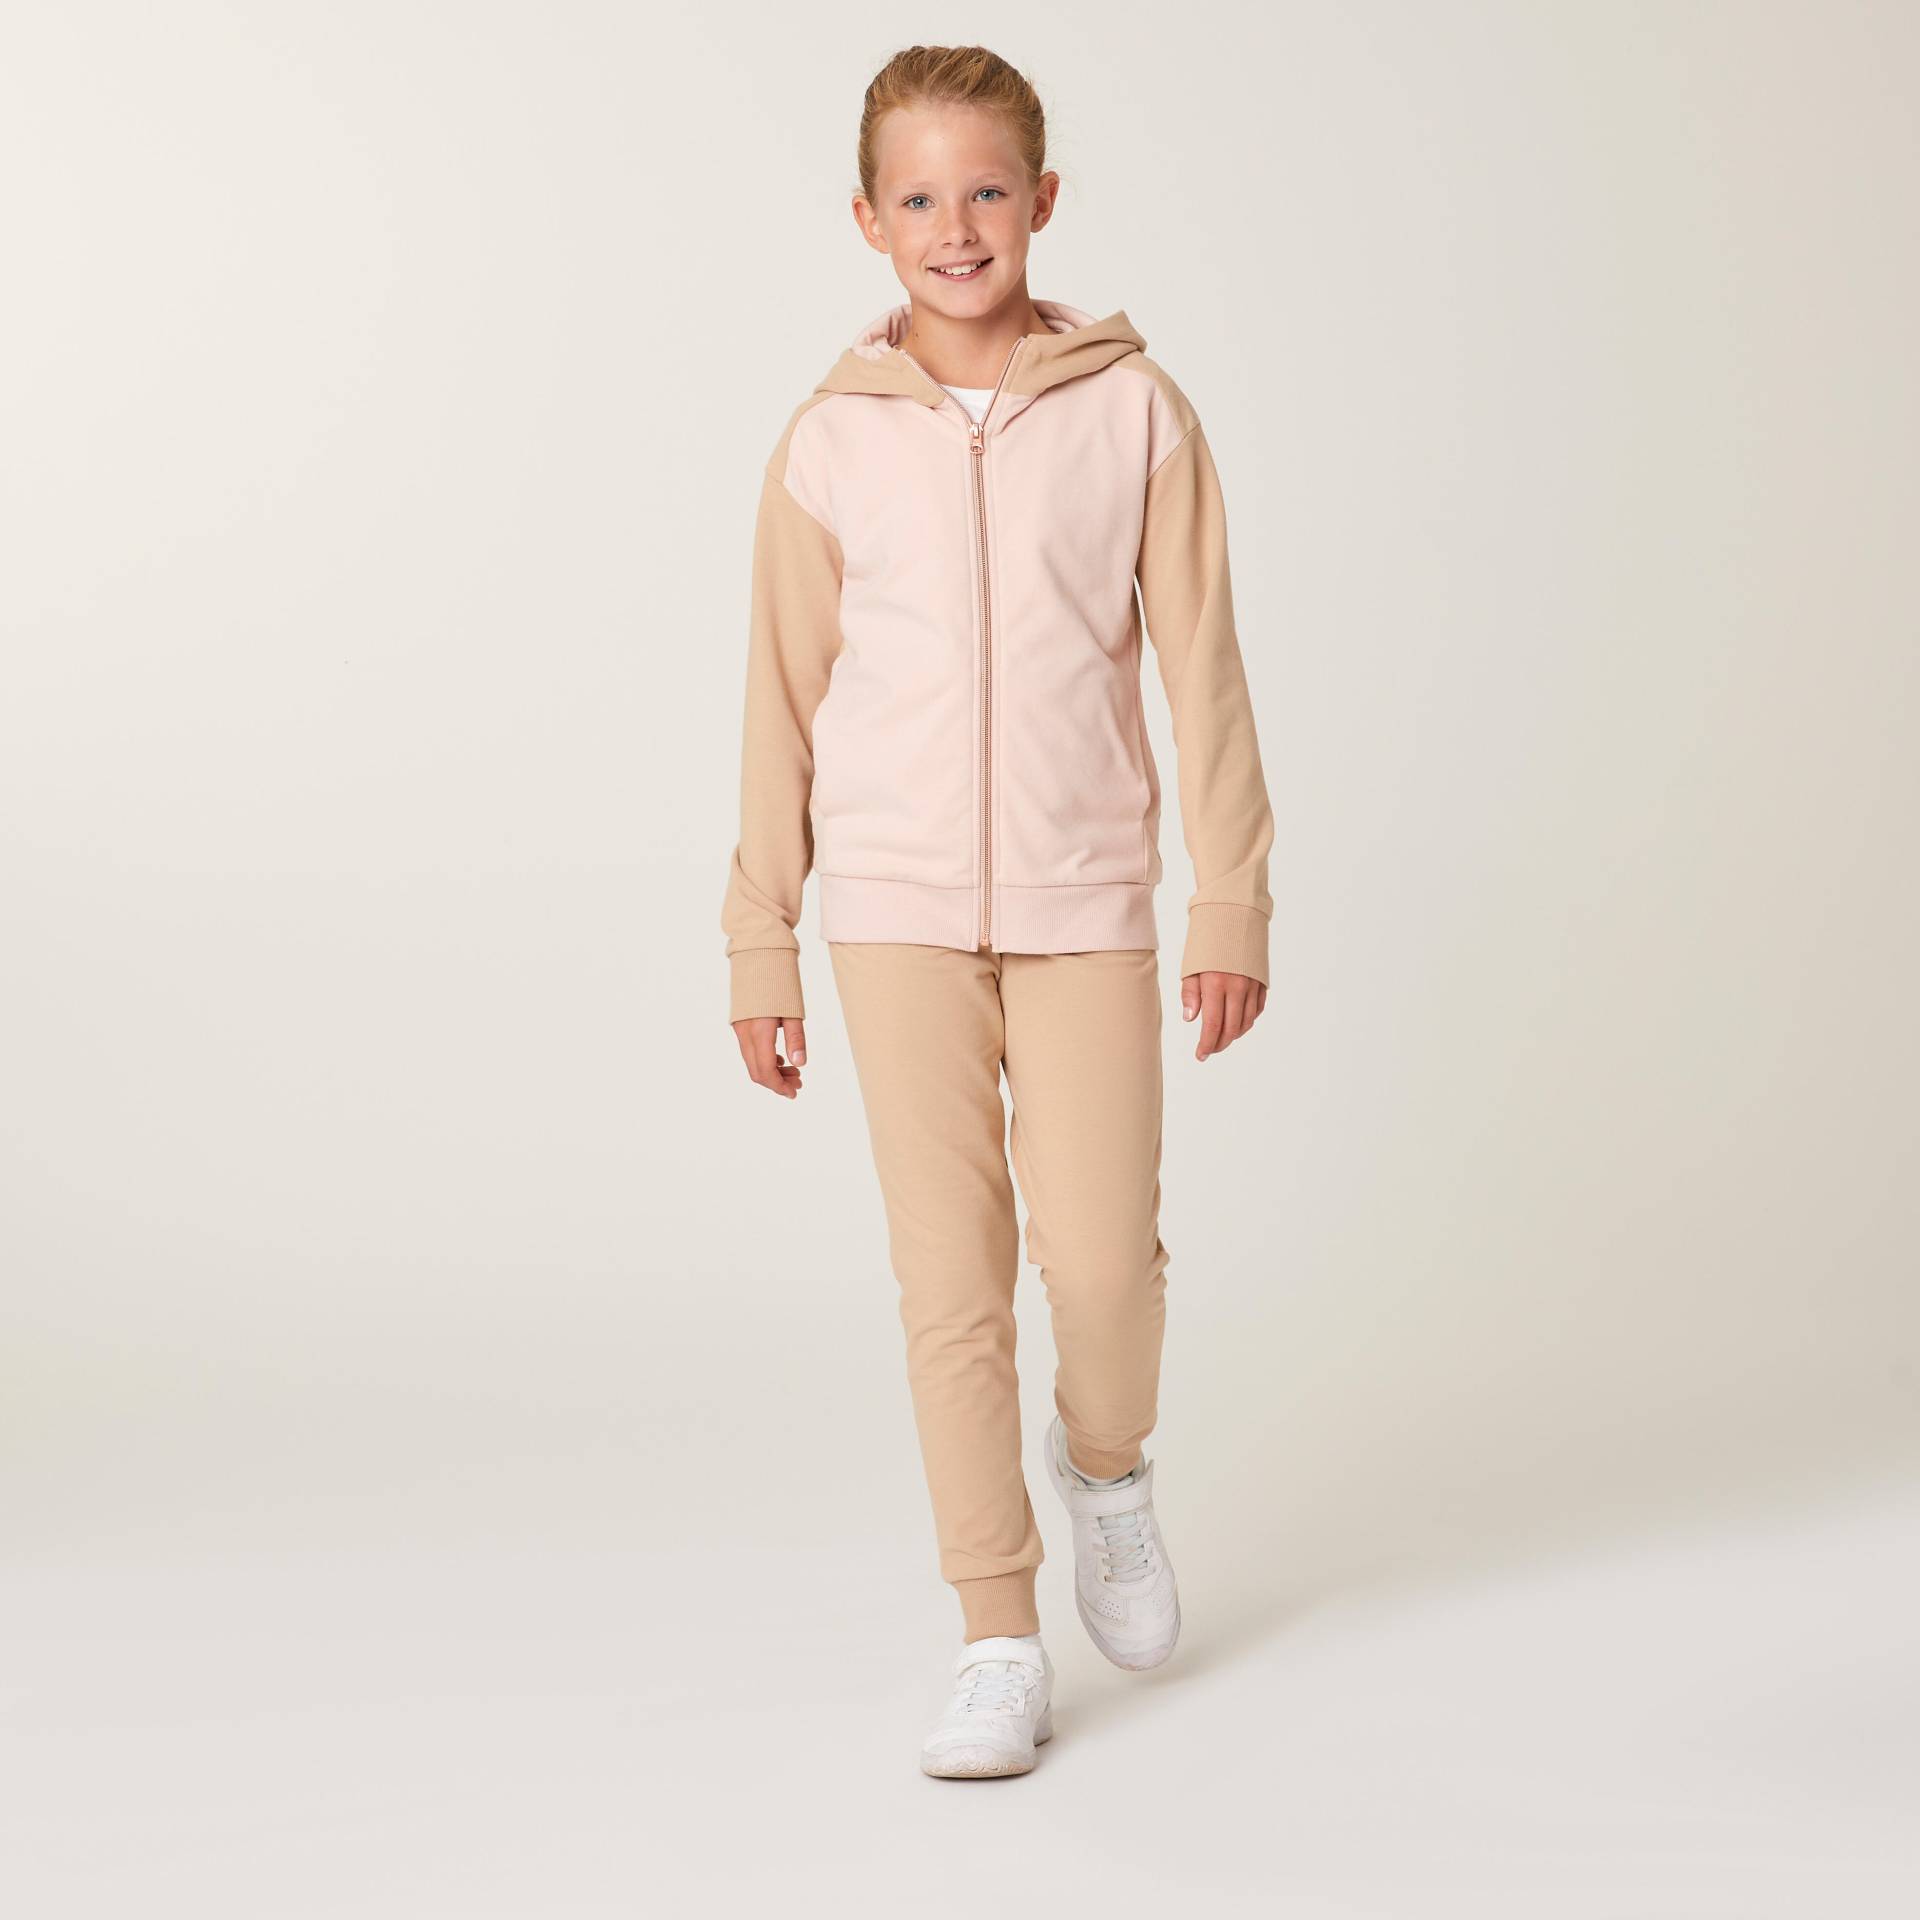 Trainingsanzug warm Kinder - 500 rosa/beige von Domyos